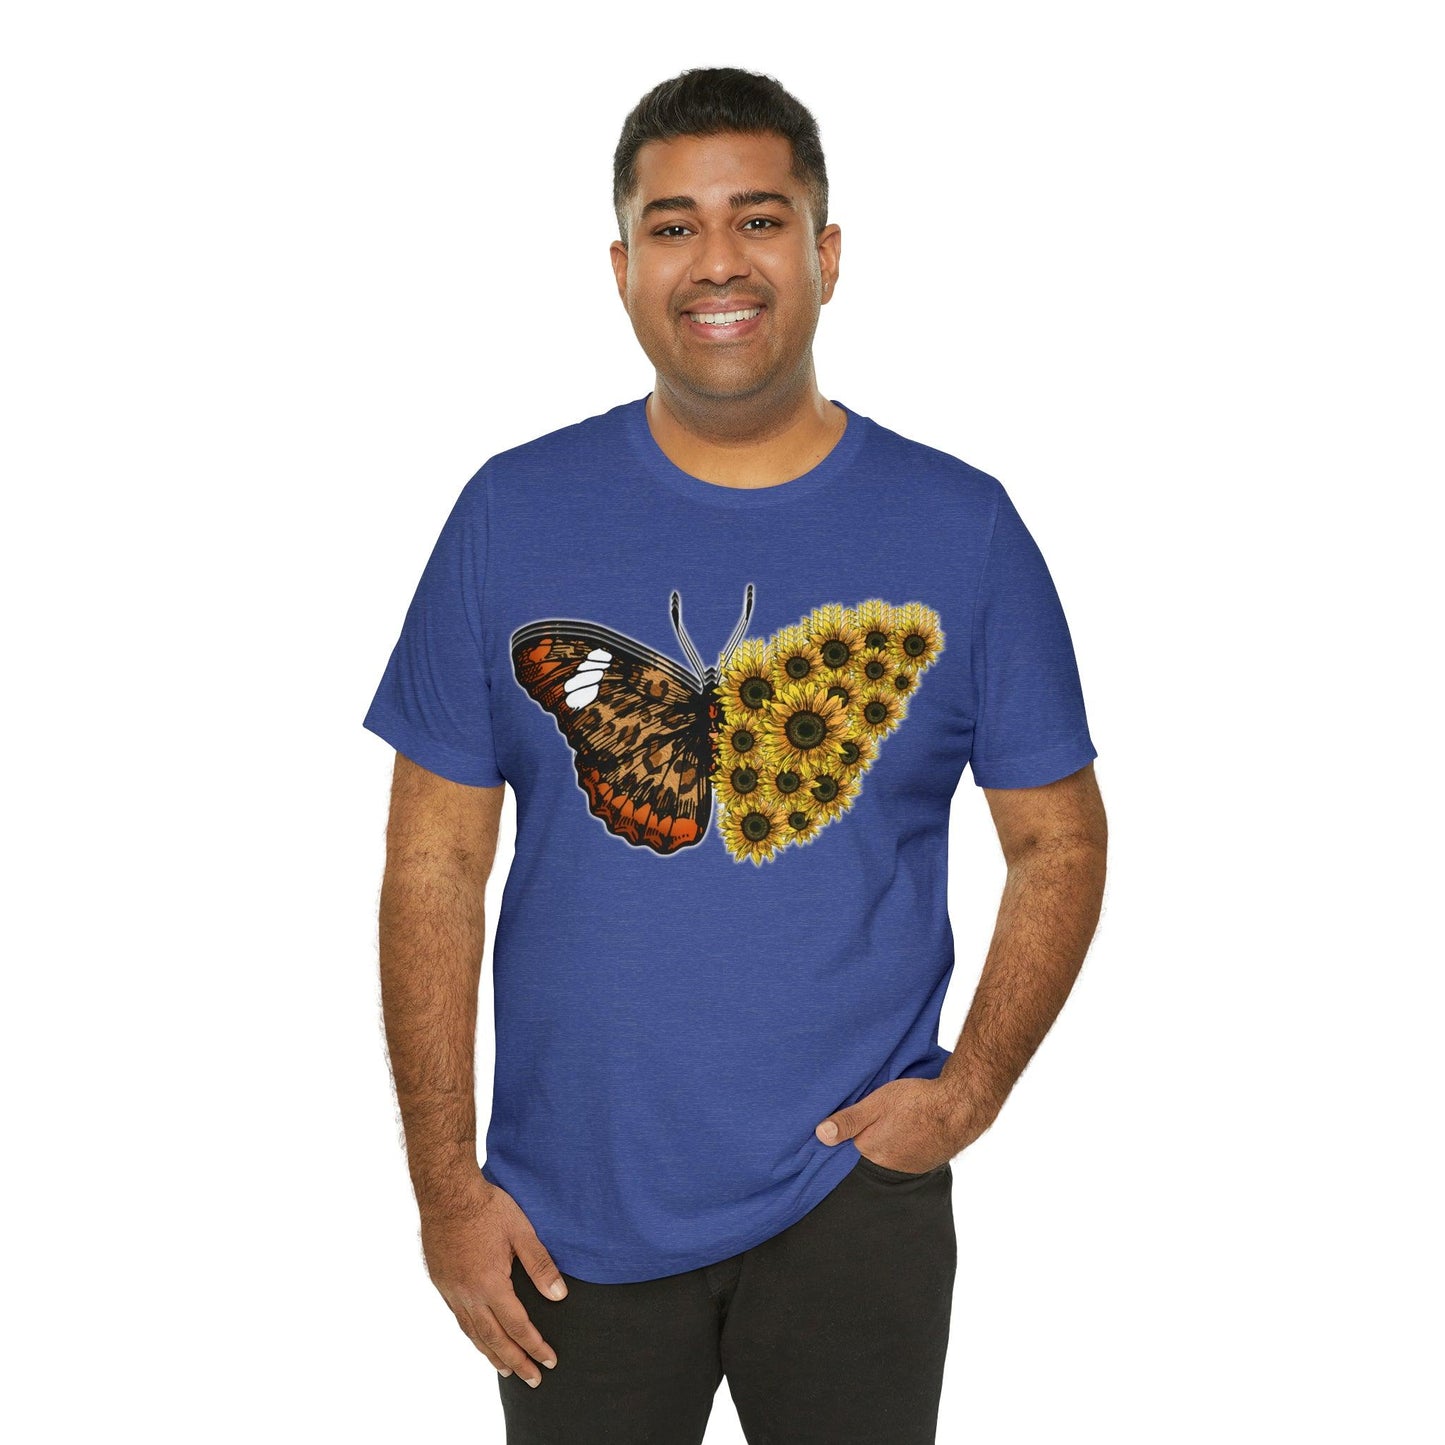 Butterfly Shirt, Sunflower Shirt, Insect Shirt Nature love T shirtFloral Tee Shirt, Flower Shirt, Garden Shirt, Womens Fall Summer shirt - Giftsmojo